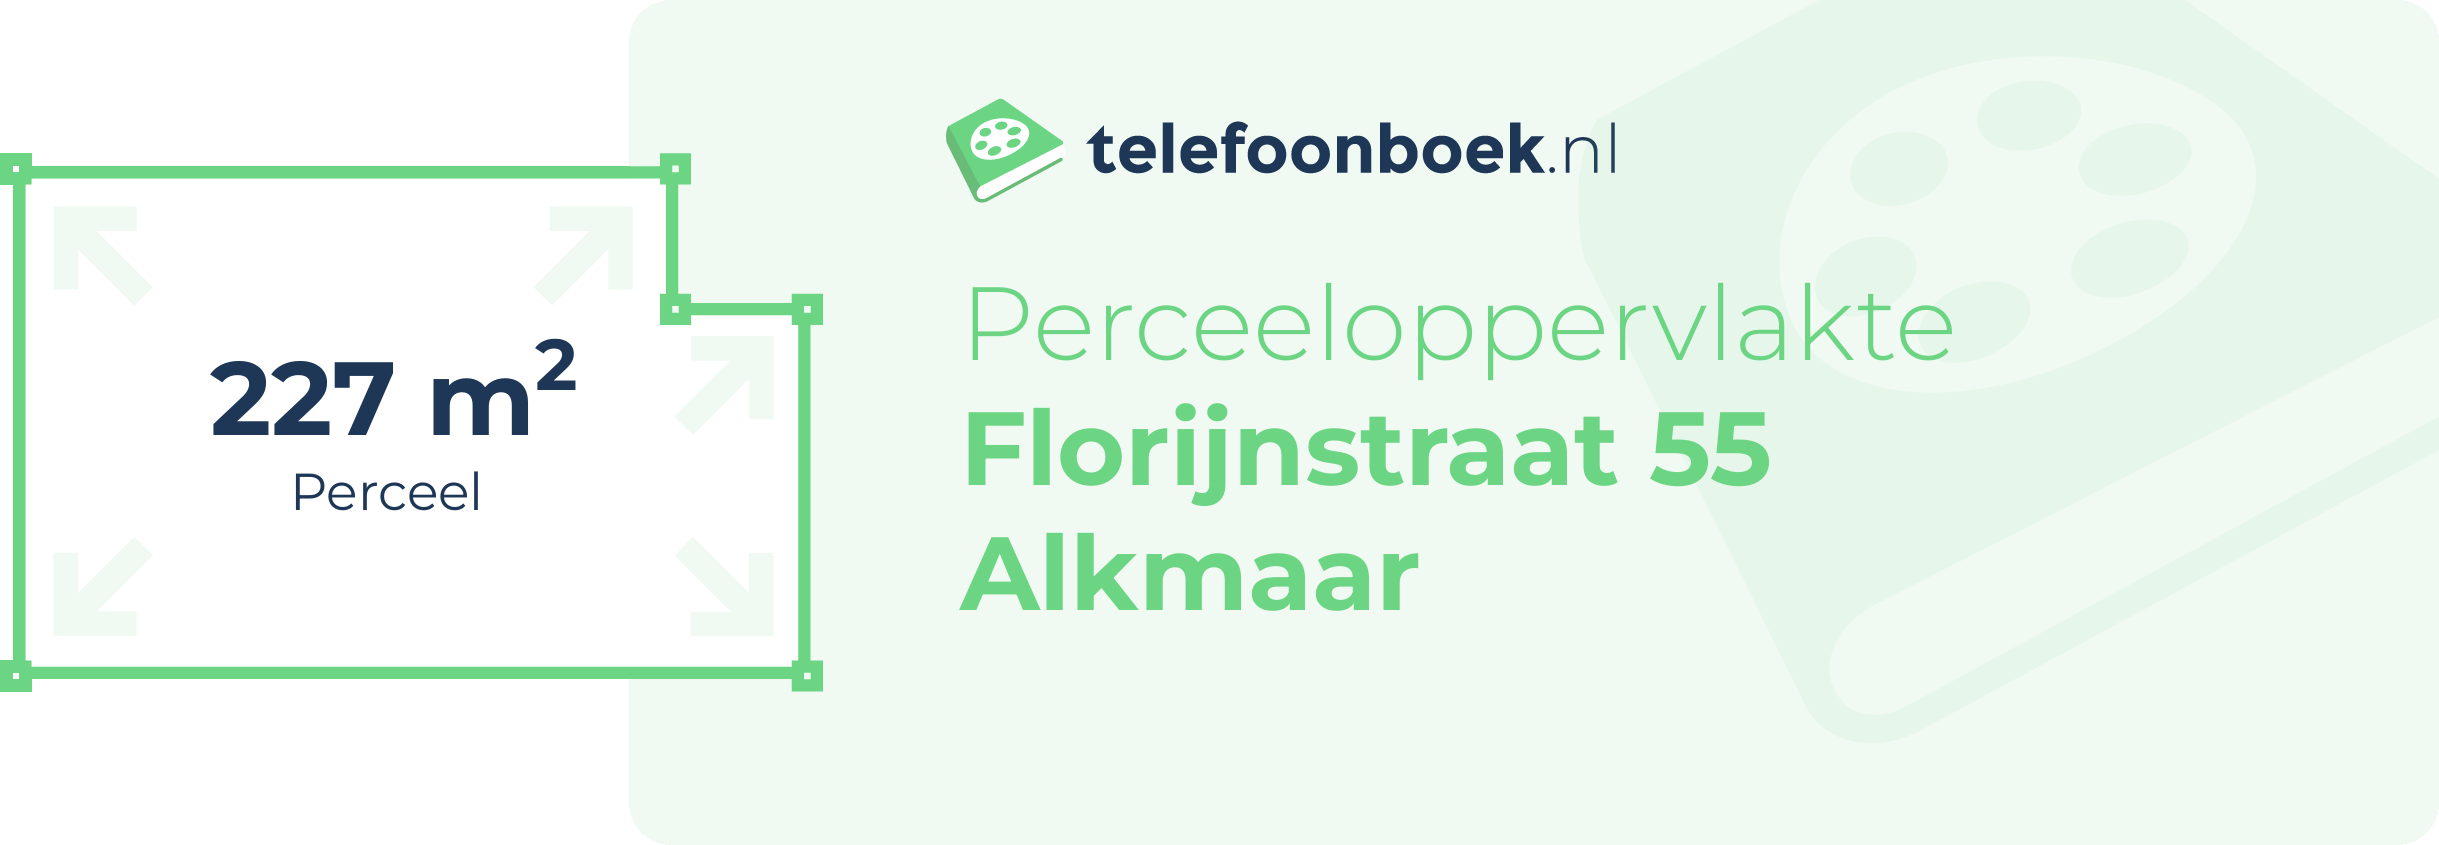 Perceeloppervlakte Florijnstraat 55 Alkmaar